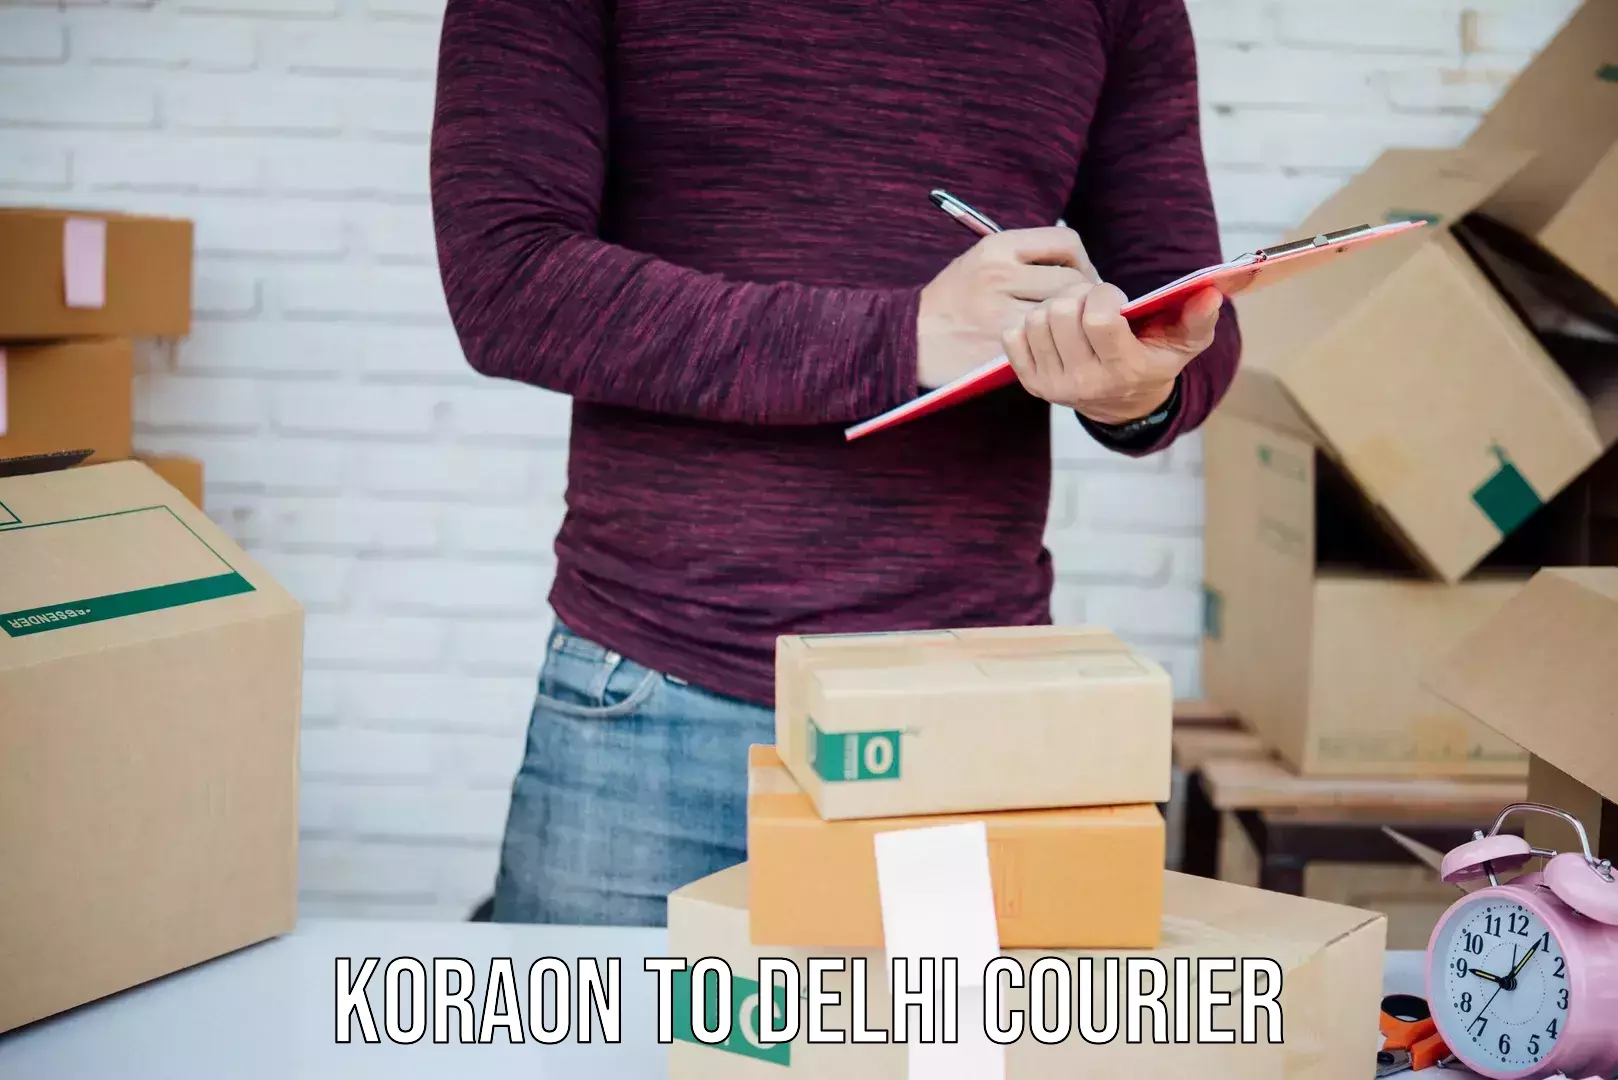 Bulk courier orders Koraon to Delhi